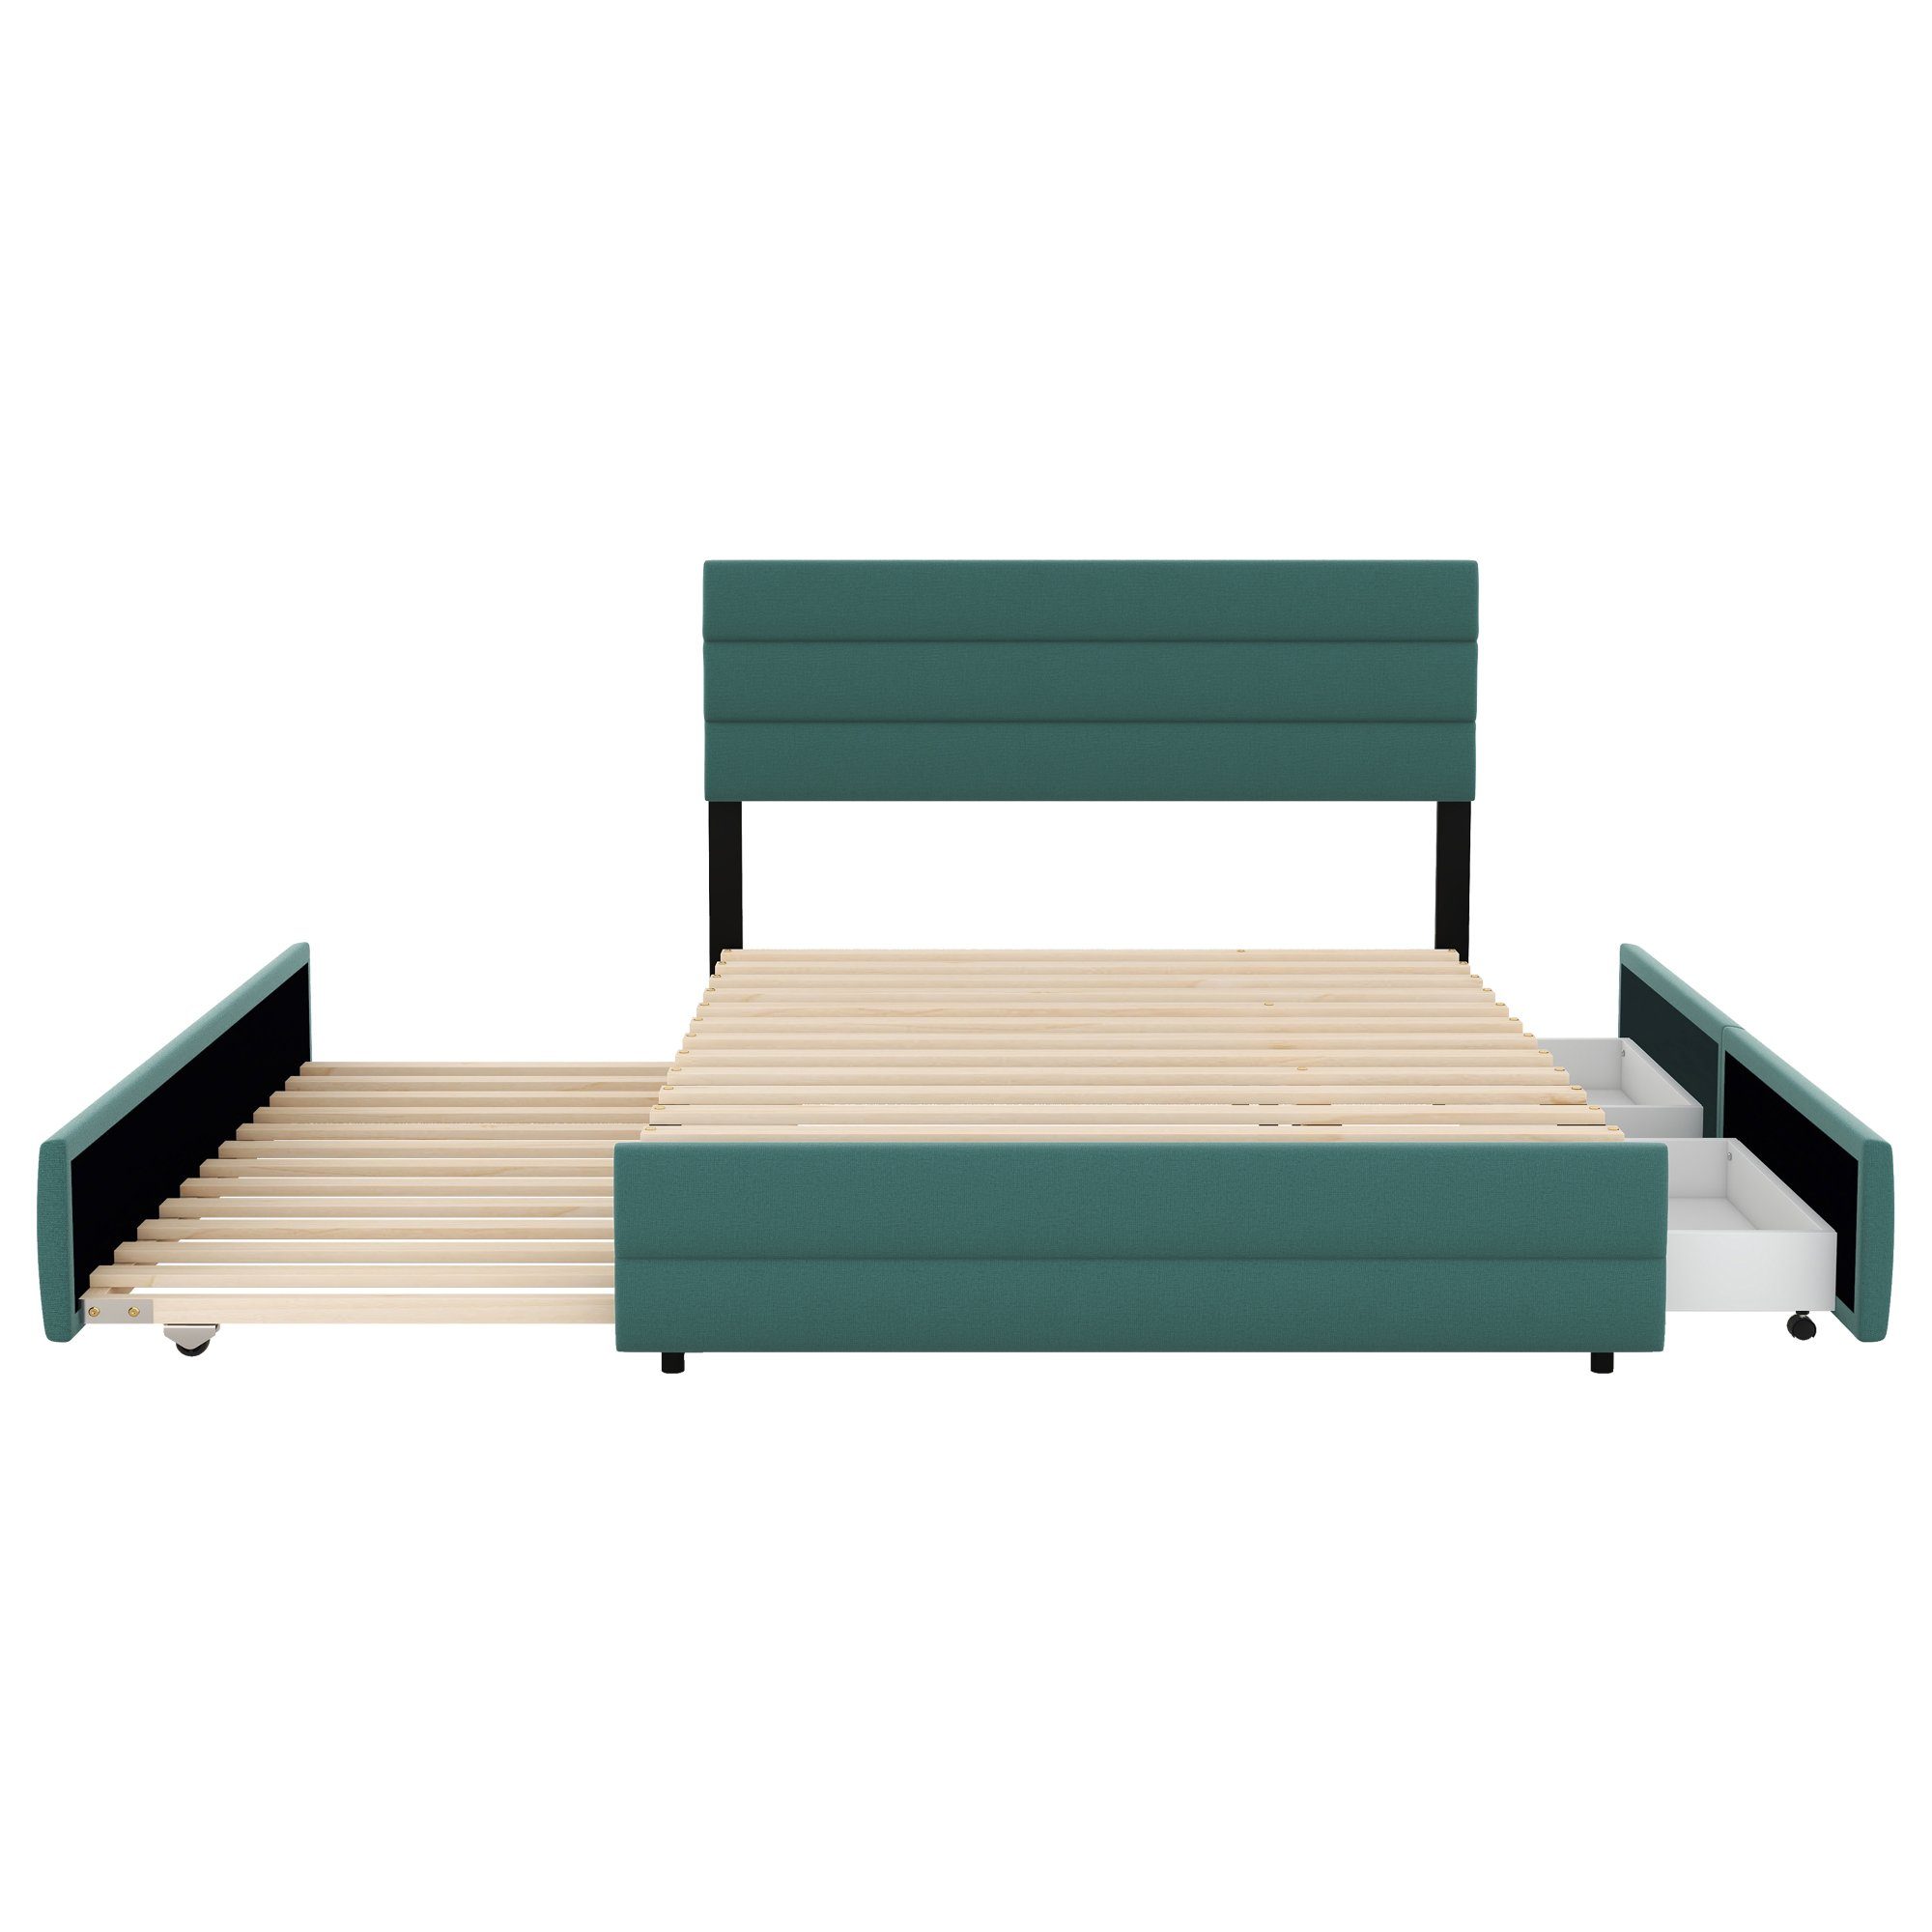 Polsterbett Doppelbett mit Schubladen, 90x190cm, Liegefläche mit Grün Merax Lattenrost, ausziehbarer 140x200cm